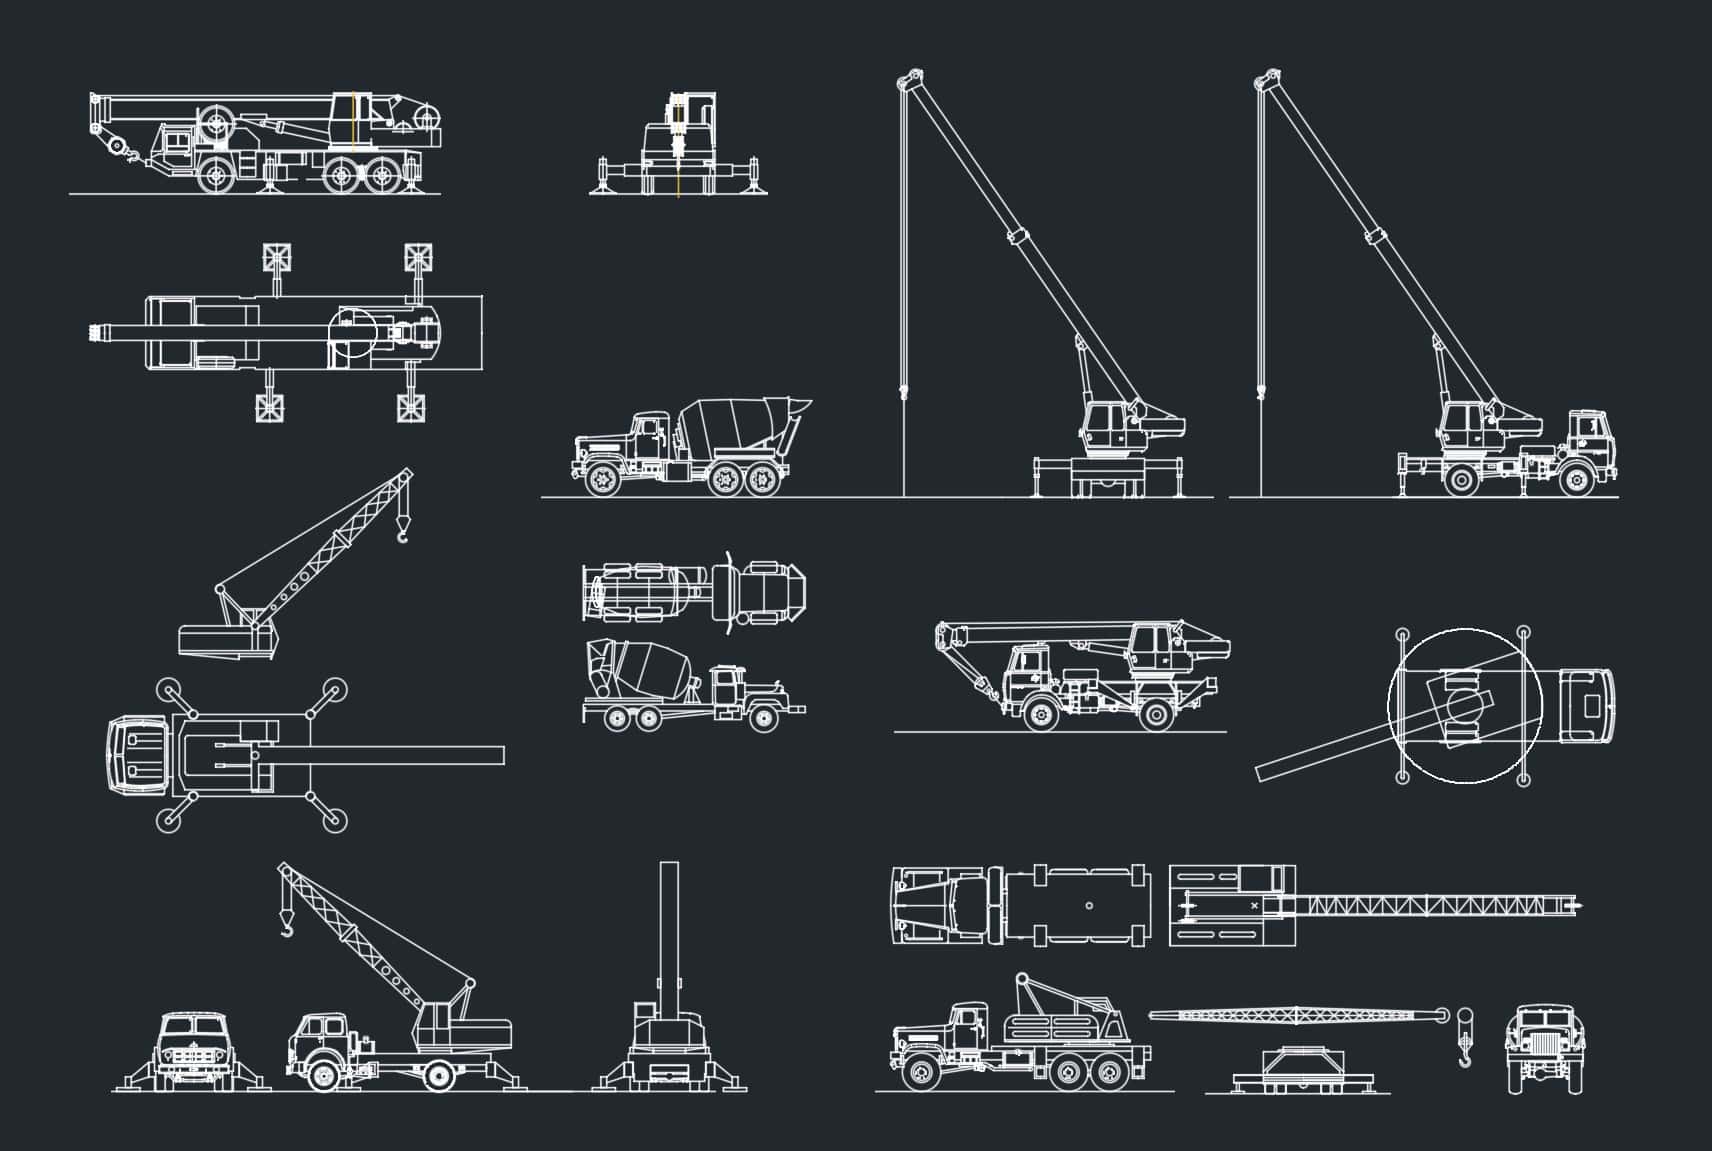 Crane CAD Drawing